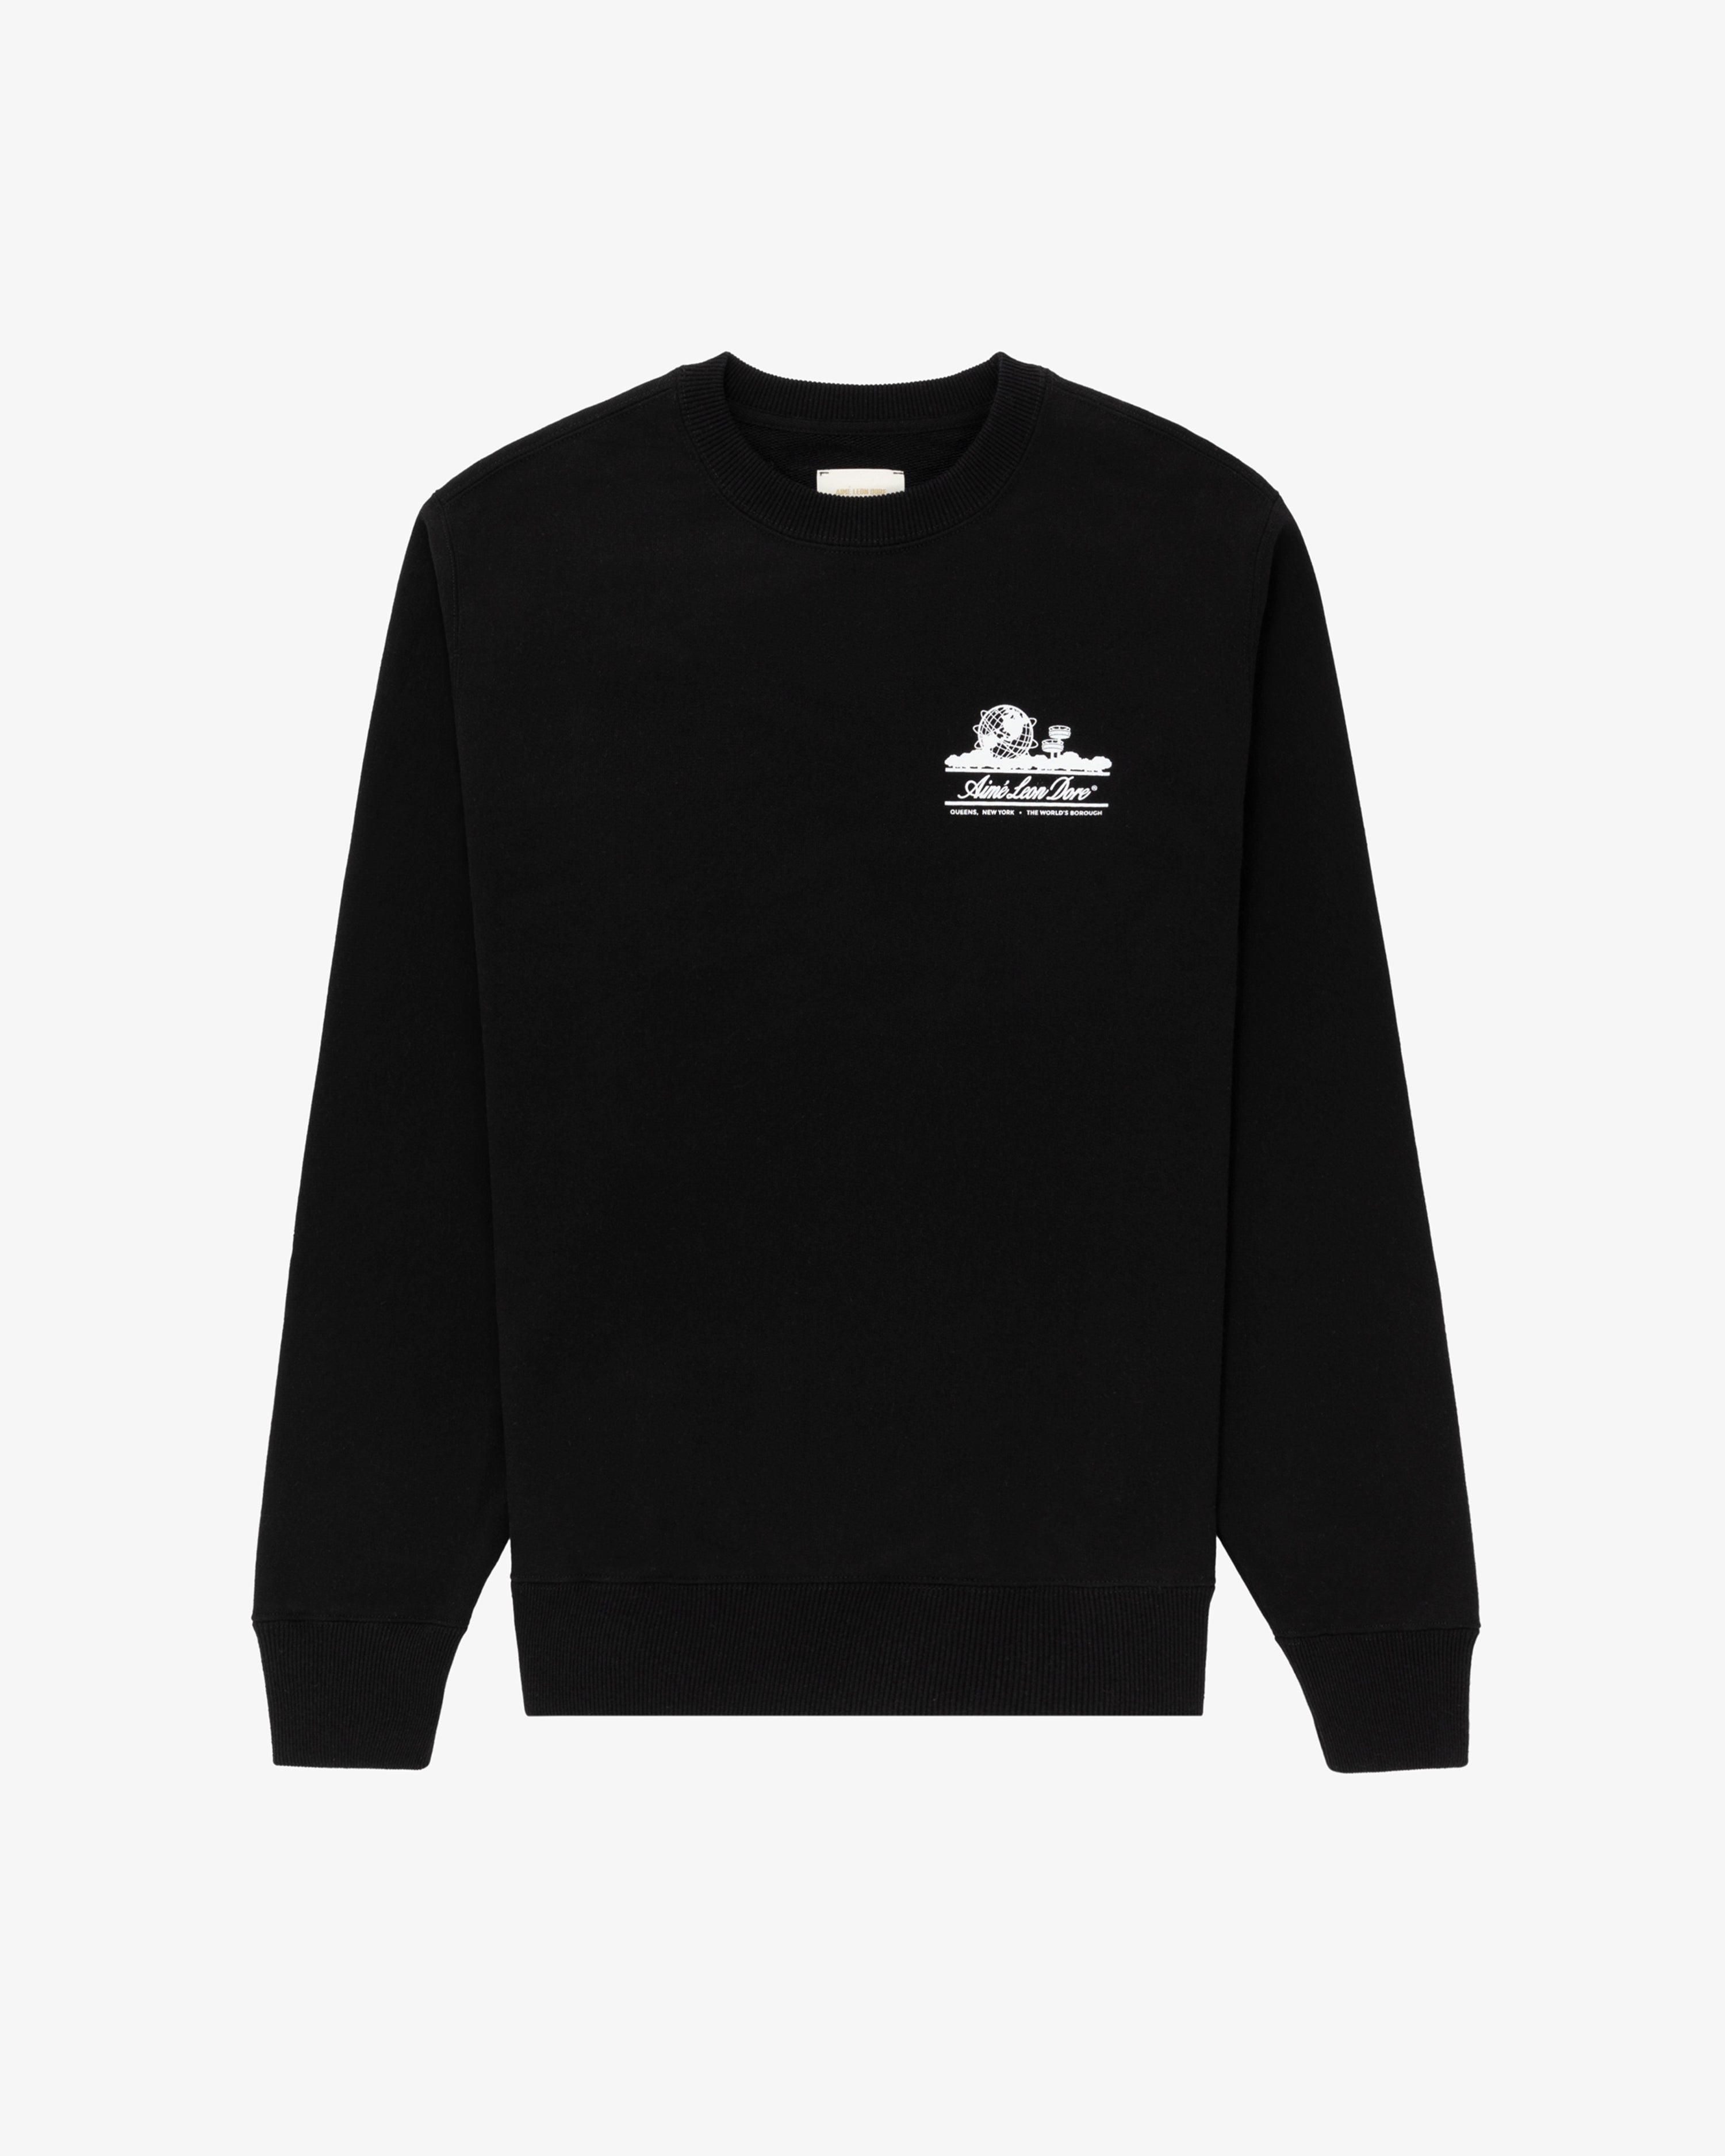 Unisphere  Crewneck Sweatshirt